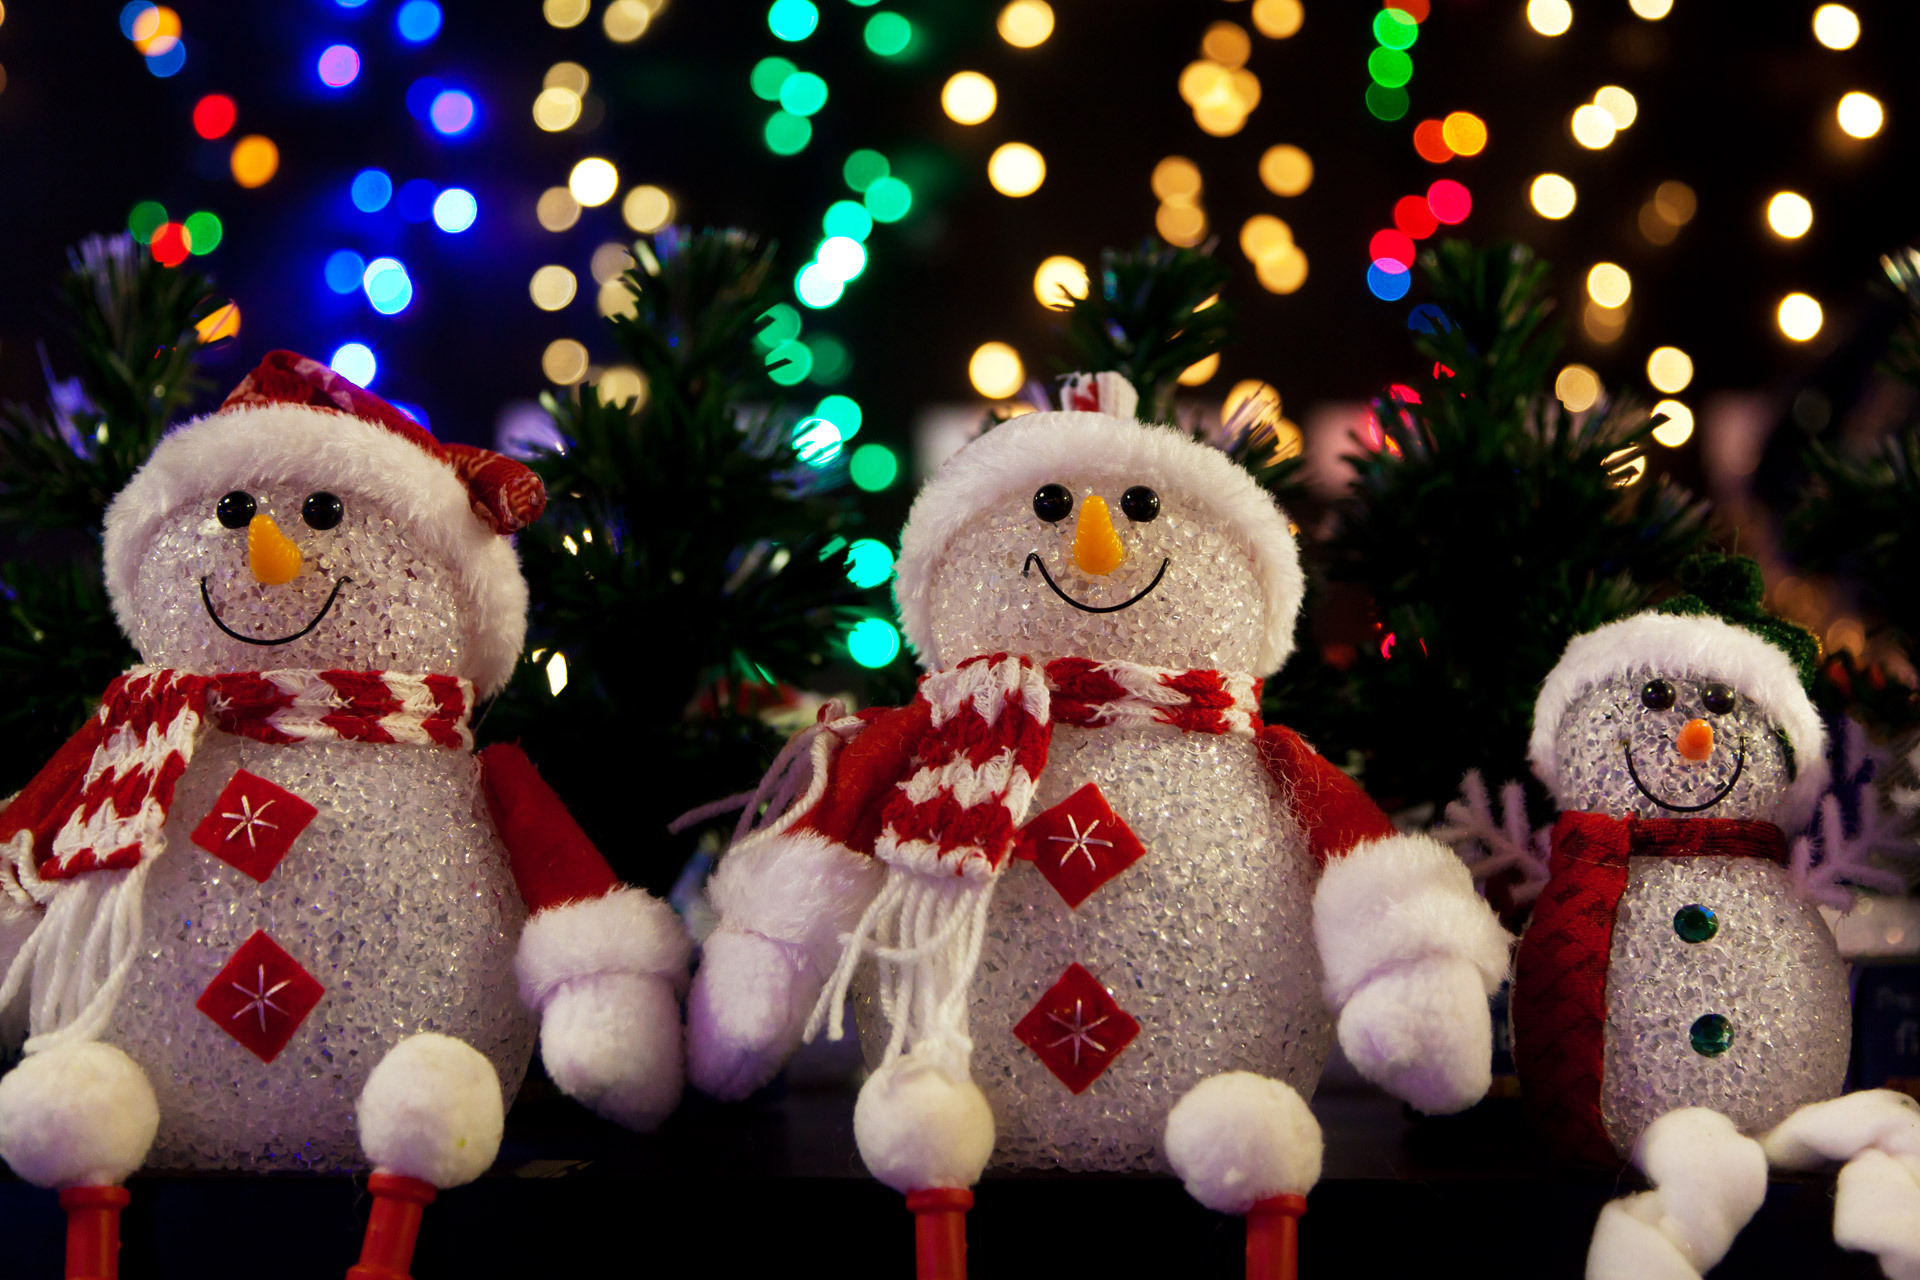 Скачать обои бесплатно Рождество, Снеговик, Праздничные картинка на рабочий стол ПК